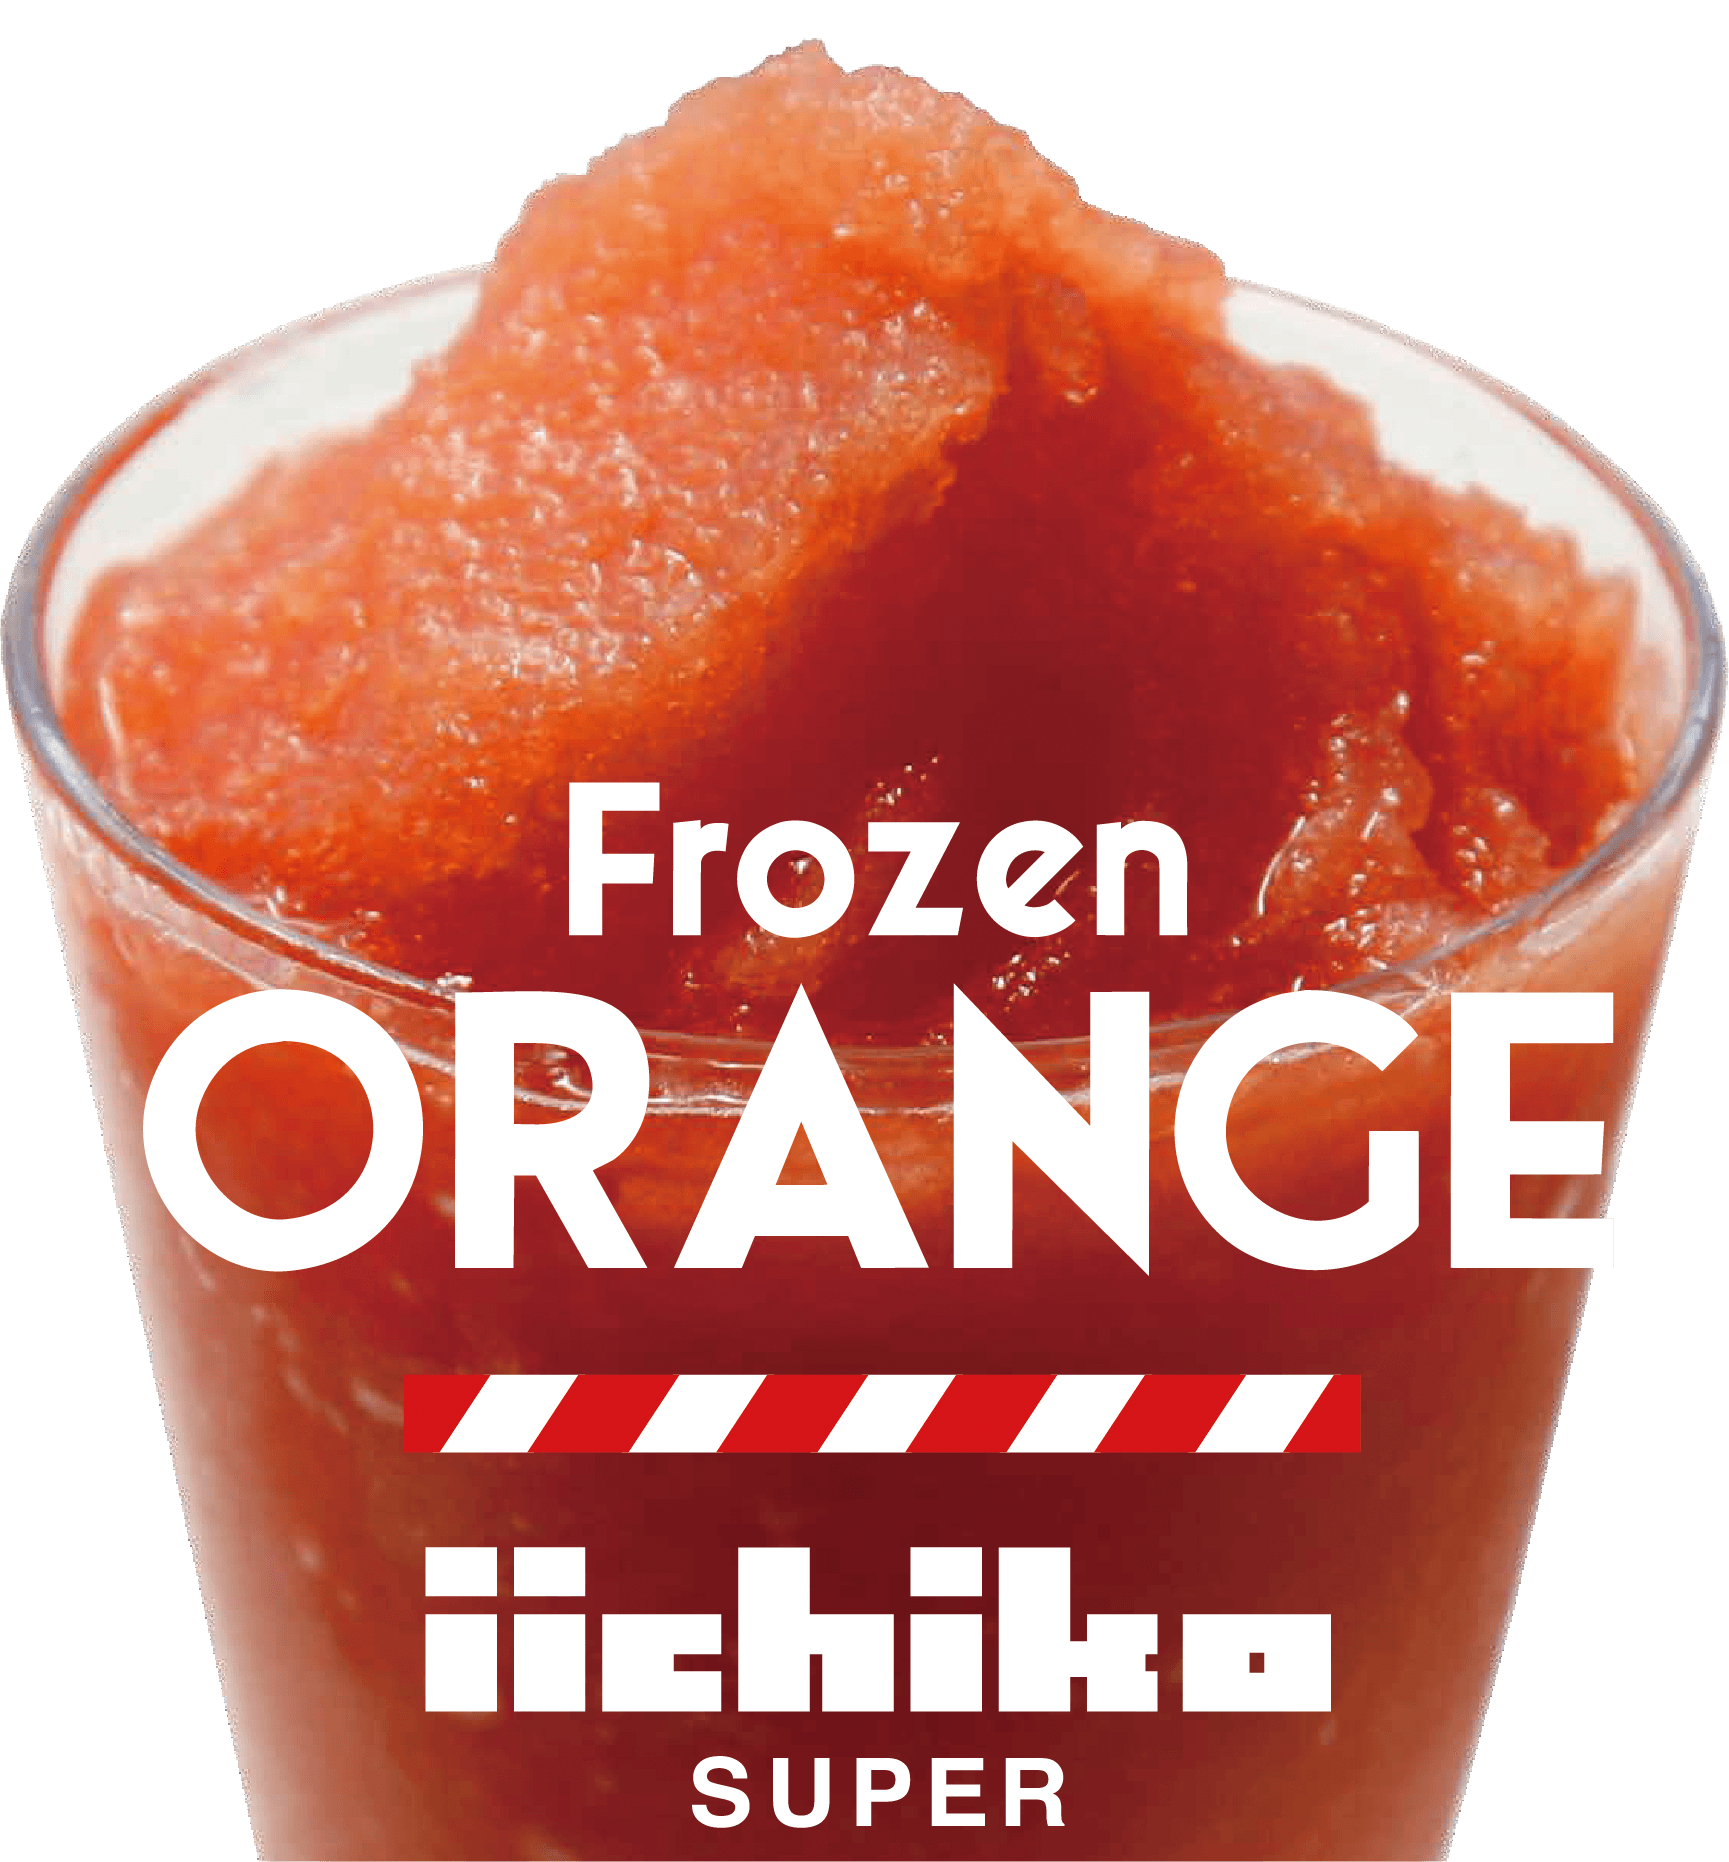 Frozen ORANGE iichiko SUPER